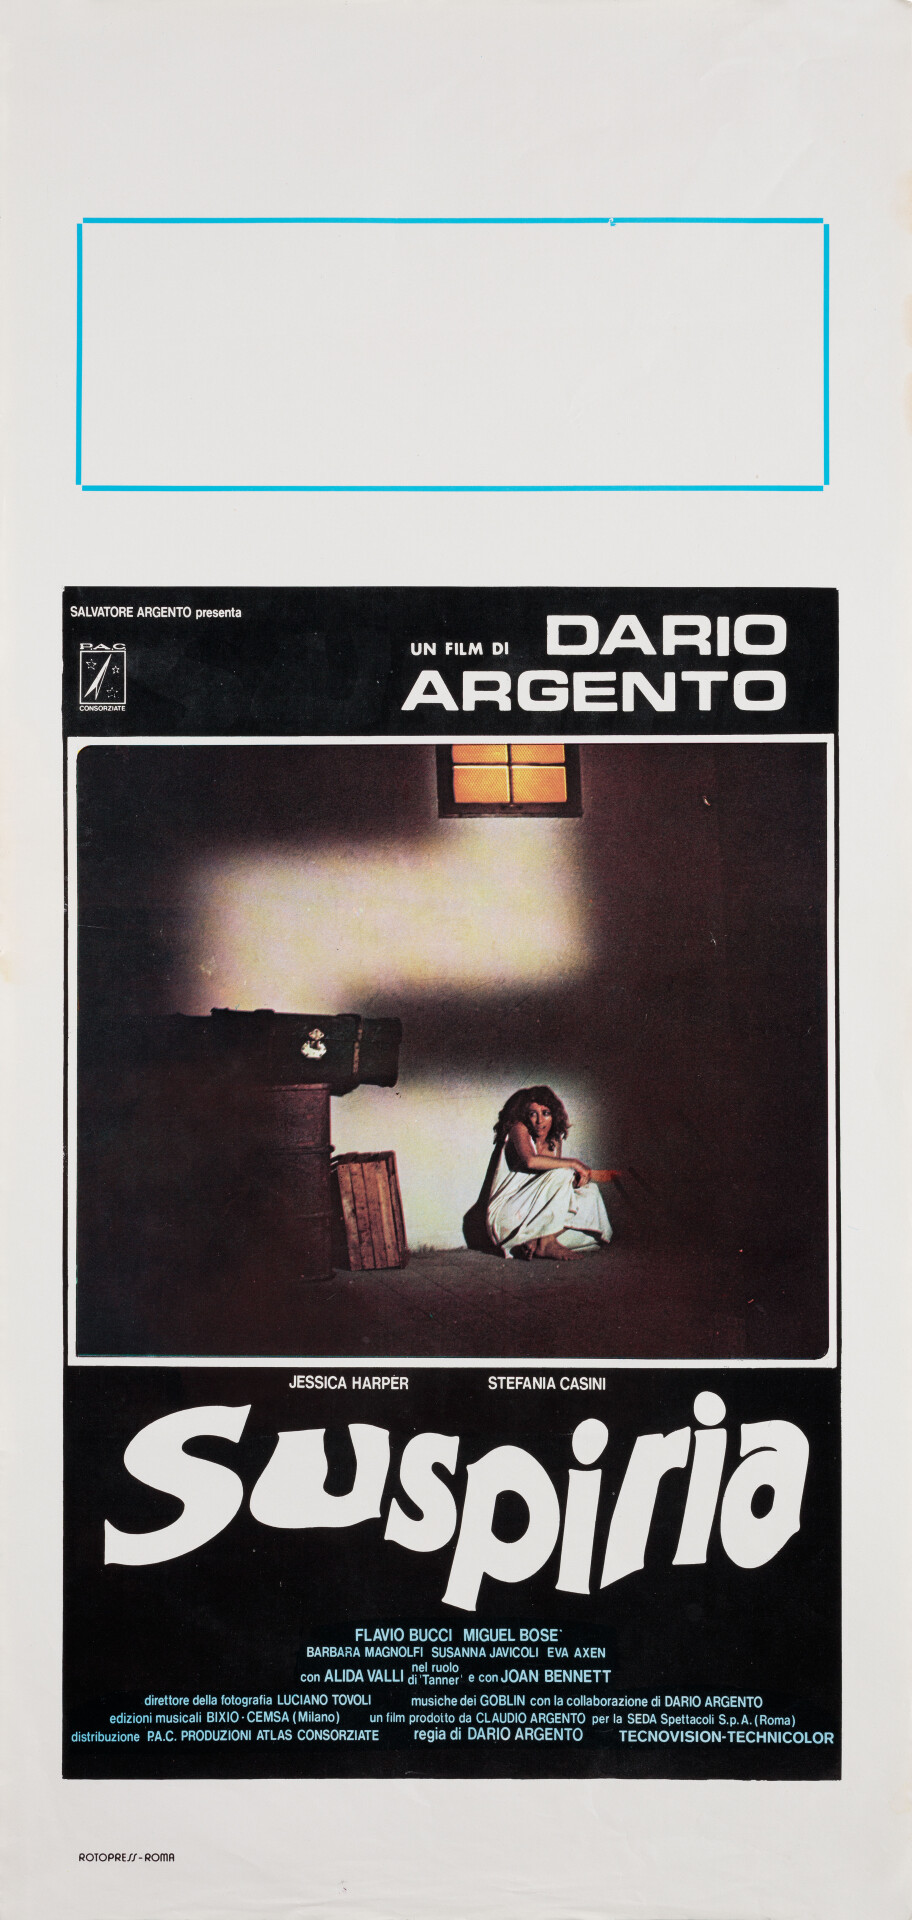 Суспирия (Suspiria, 1977), режиссёр Дарио Ардженто, итальянский постер к фильму (ужасы, 1977 год)